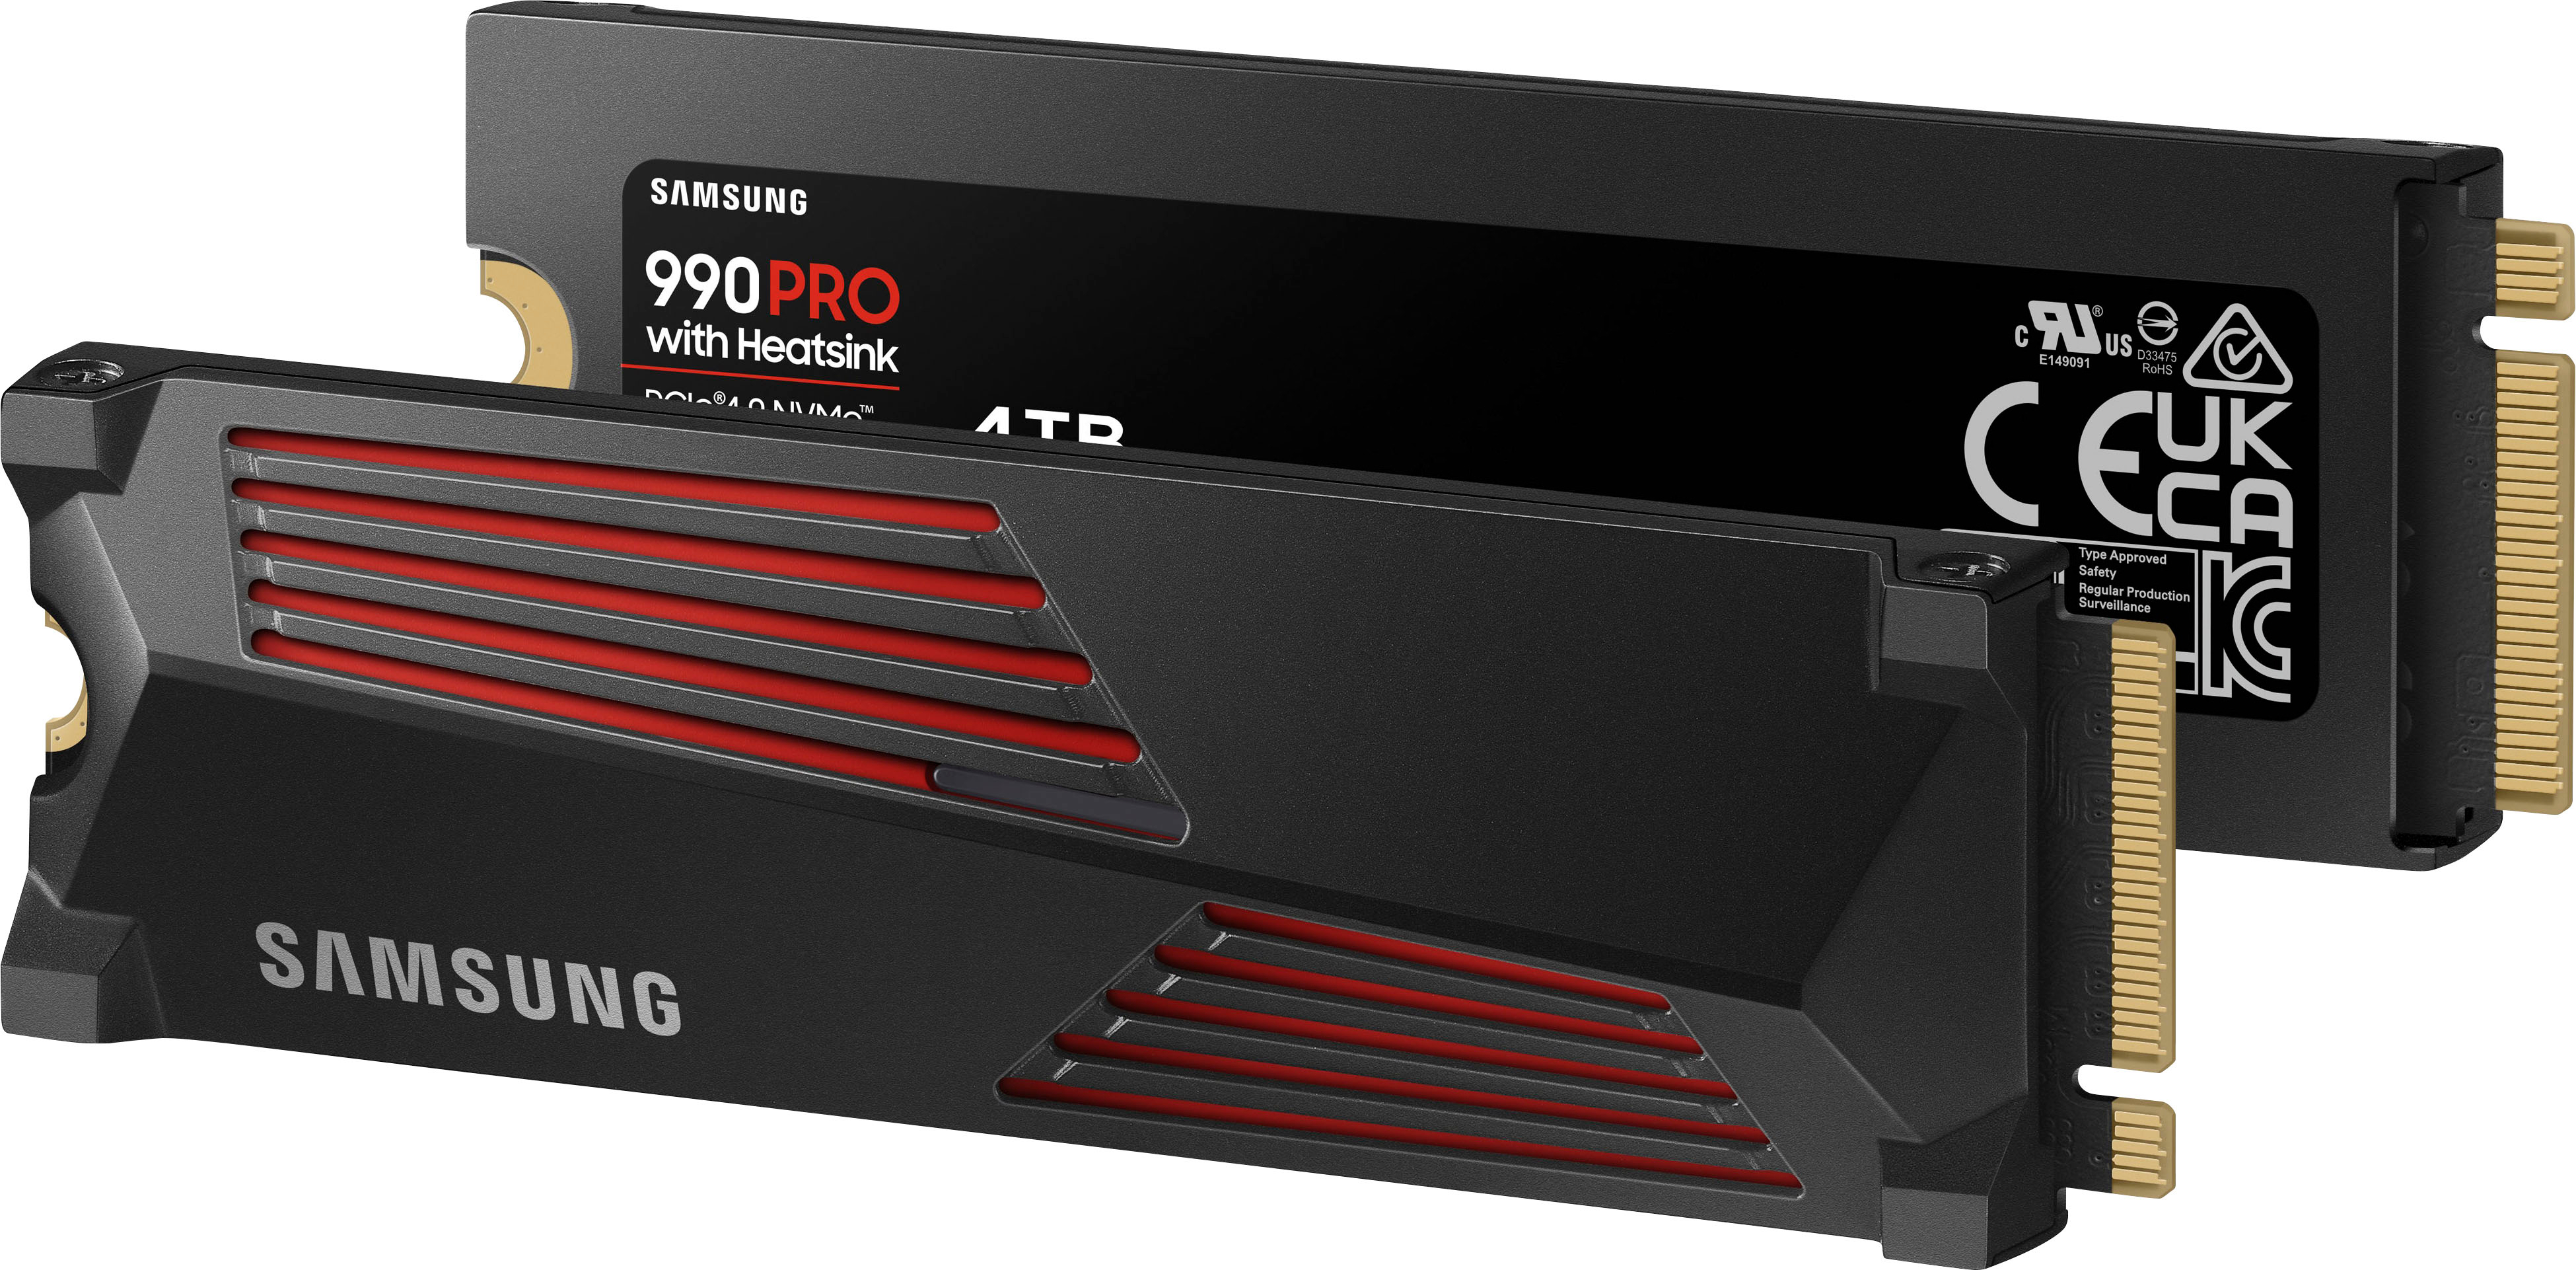 SAMSUNG Disque dur SSD interne 990 PRO 4 TB avec Heatsink pour PS5  (MZ-V9P4T0GW) Belgique et Frontalier –